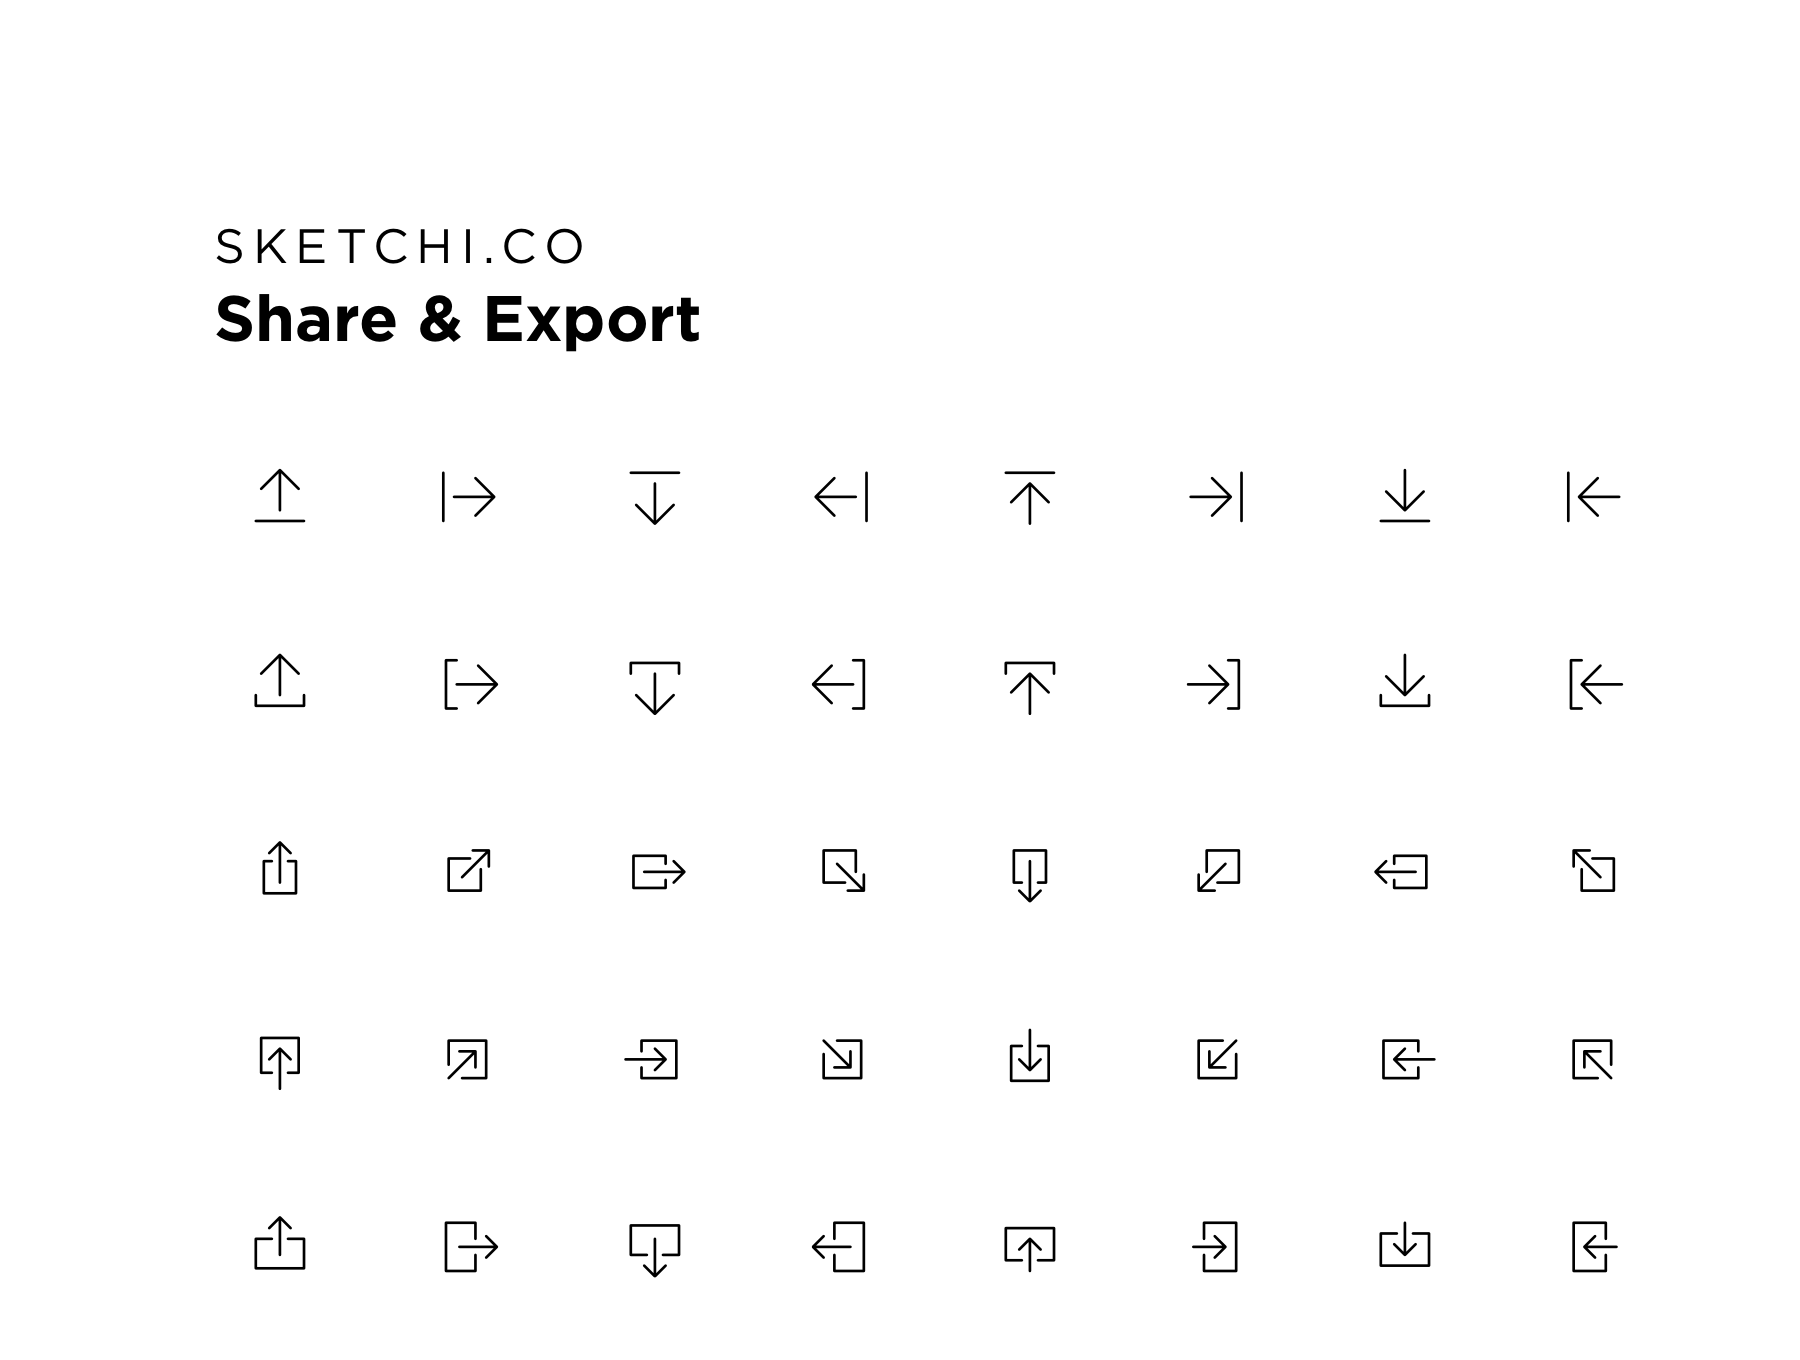 分享输出相关功能图标套装Share & Export